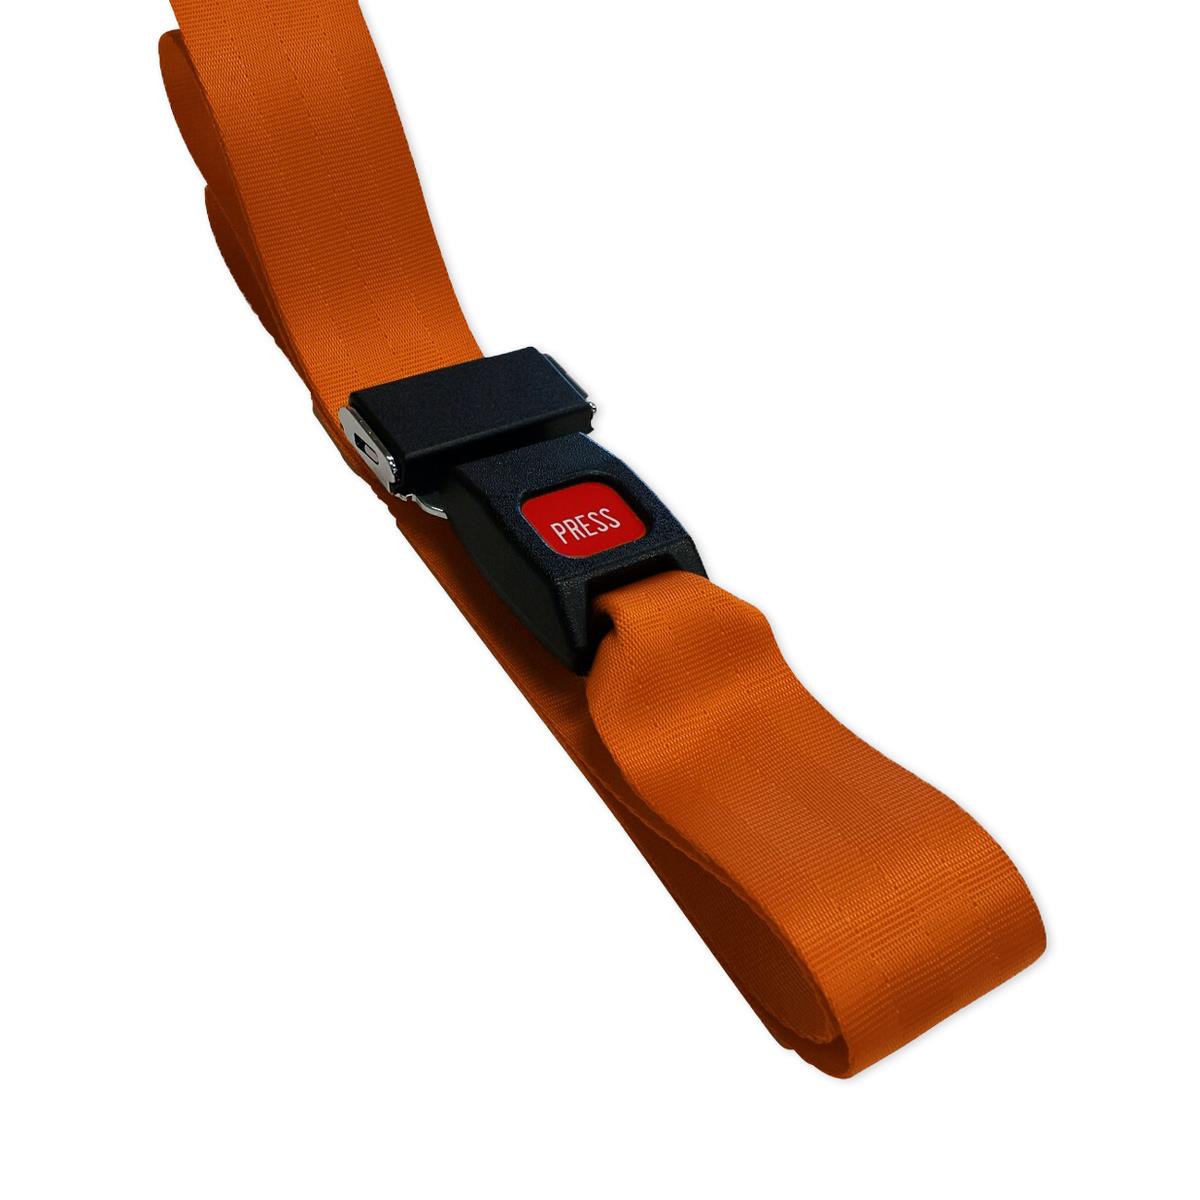 Nylon Swivel Speed-Clip Backboard Strap with Metal Buckle